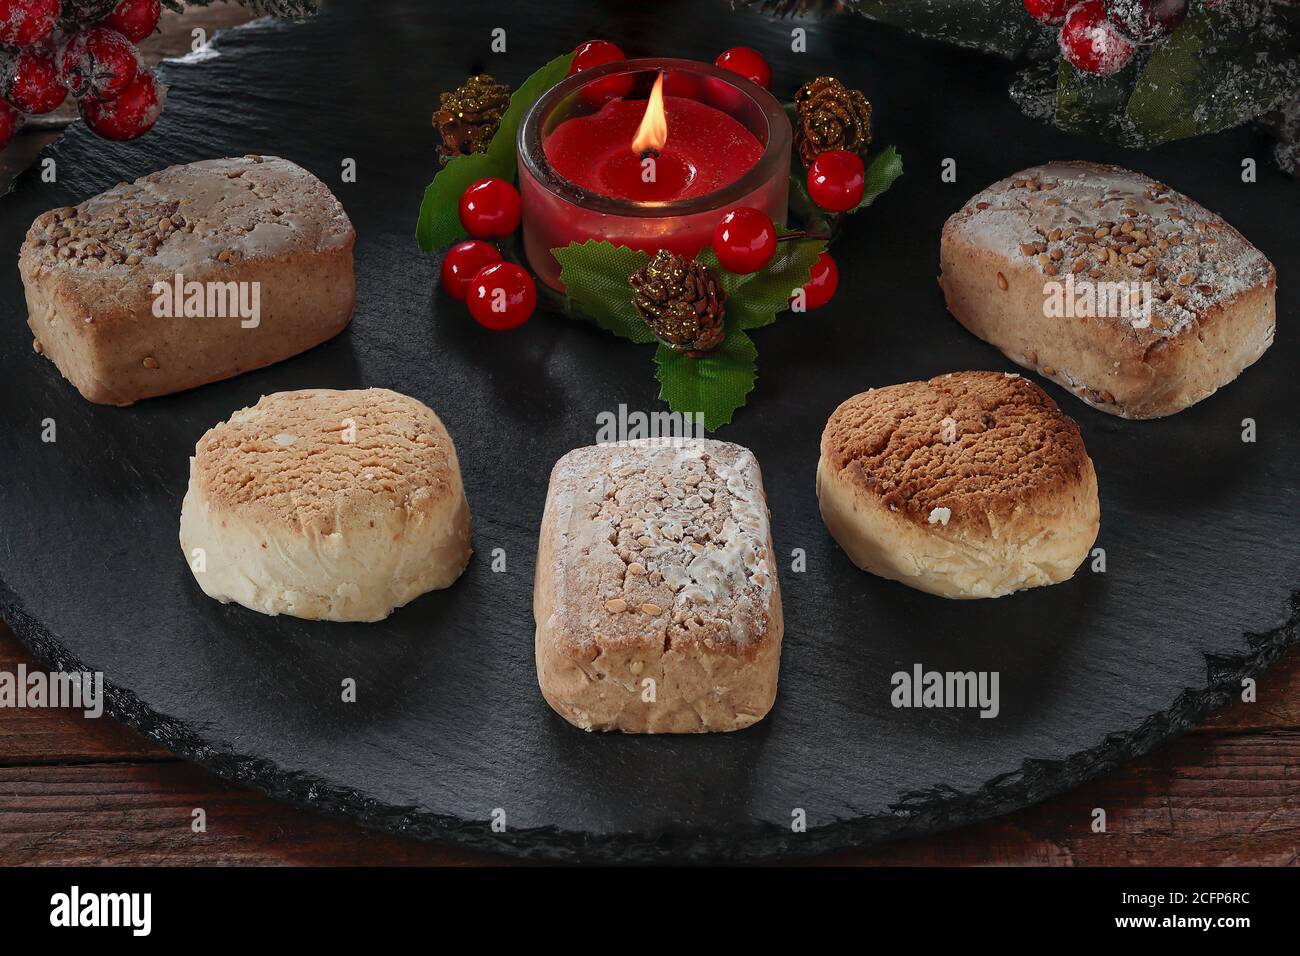 Polvorone und entzündete dekorative rote Kerze auf runder Schieferplatte.Polvoron Ist ein typisches Produkt von Weihnachtsgebäck in Spanien Stockfoto